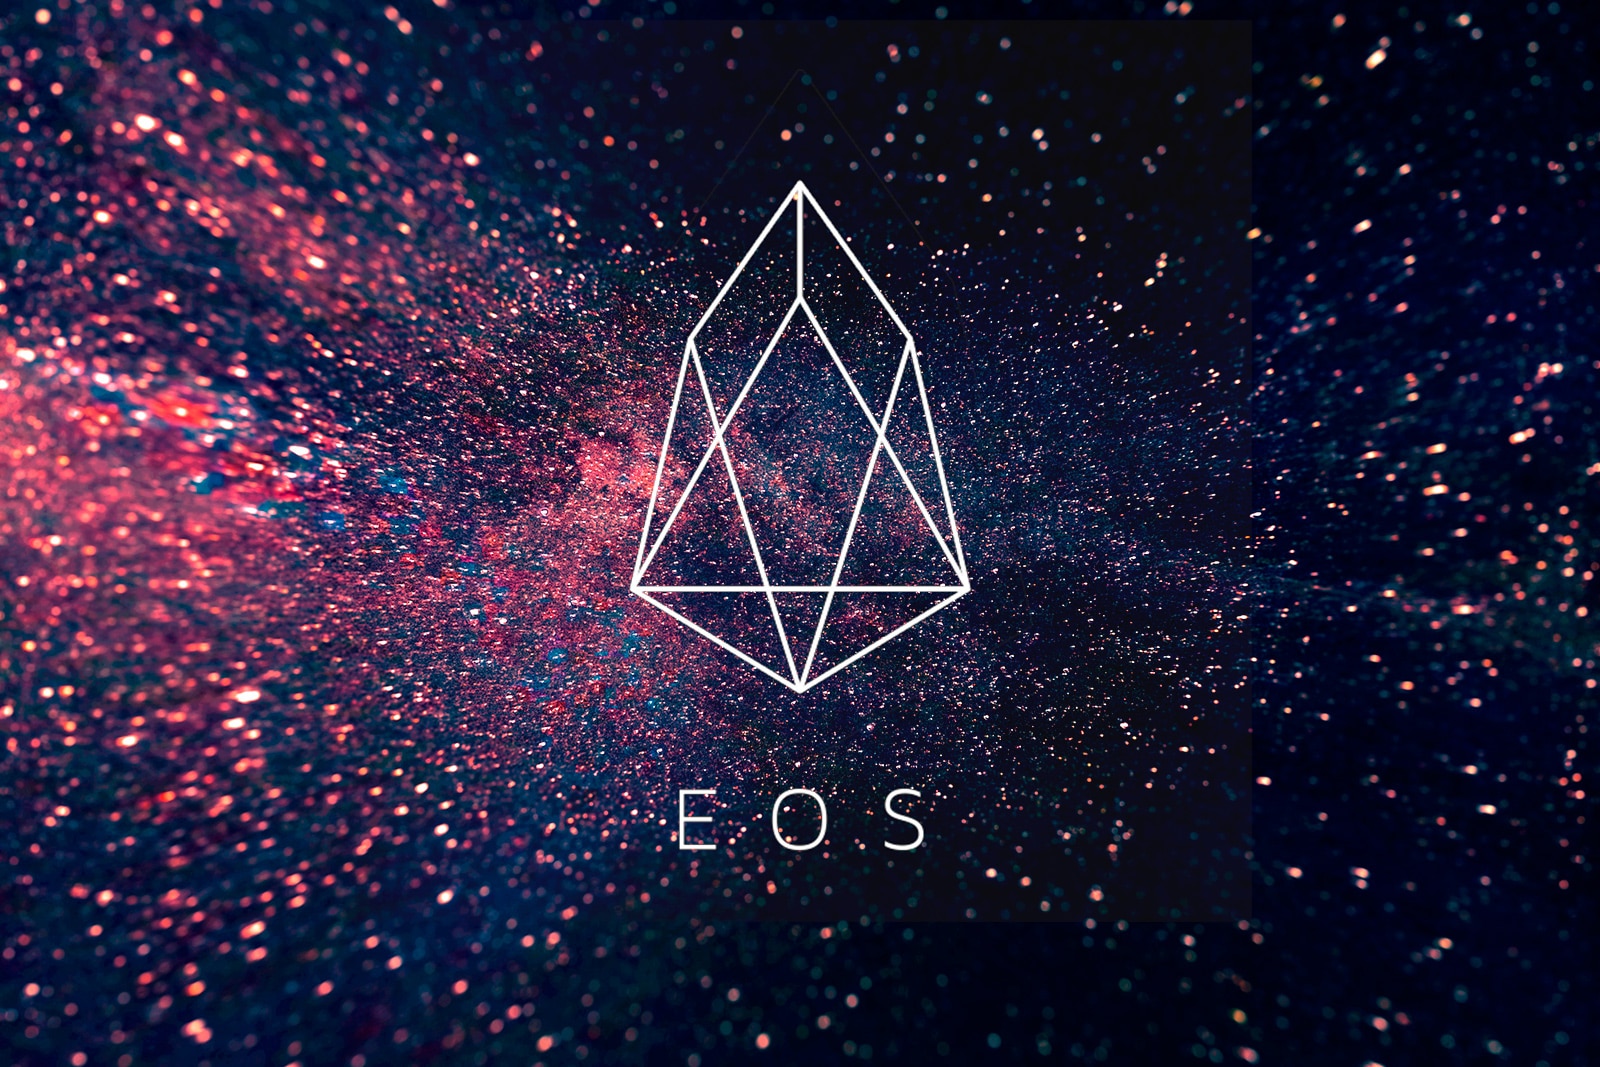 Сообщество EOS решило прекратить выплаты разработчикам Block.one